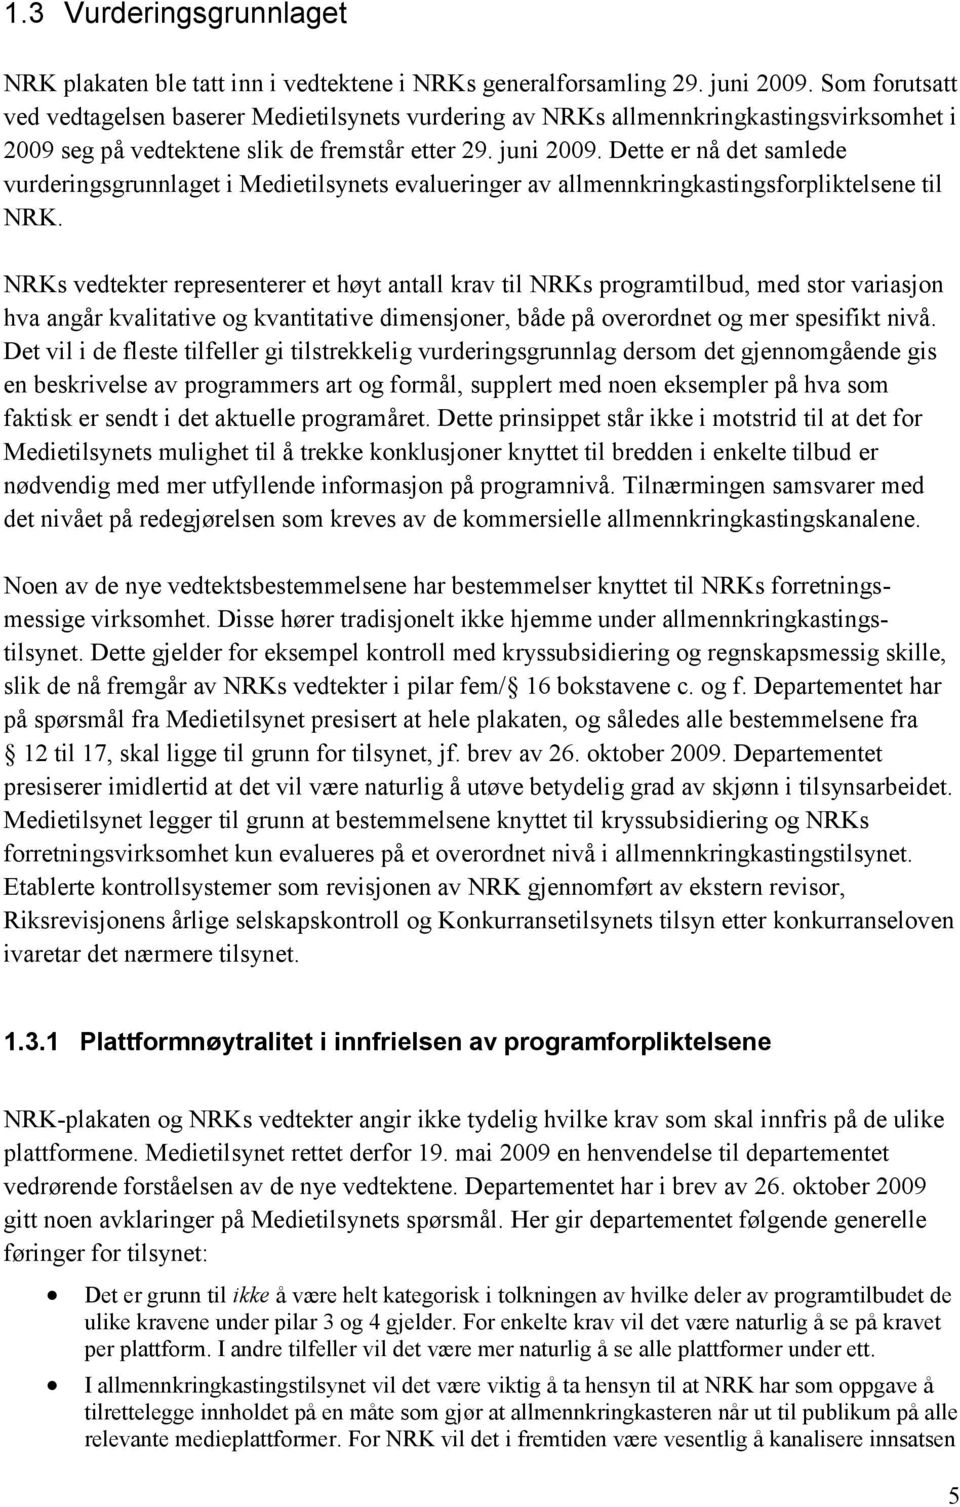 Dette er nå det samlede vurderingsgrunnlaget i Medietilsynets evalueringer av allmennkringkastingsforpliktelsene til NRK.